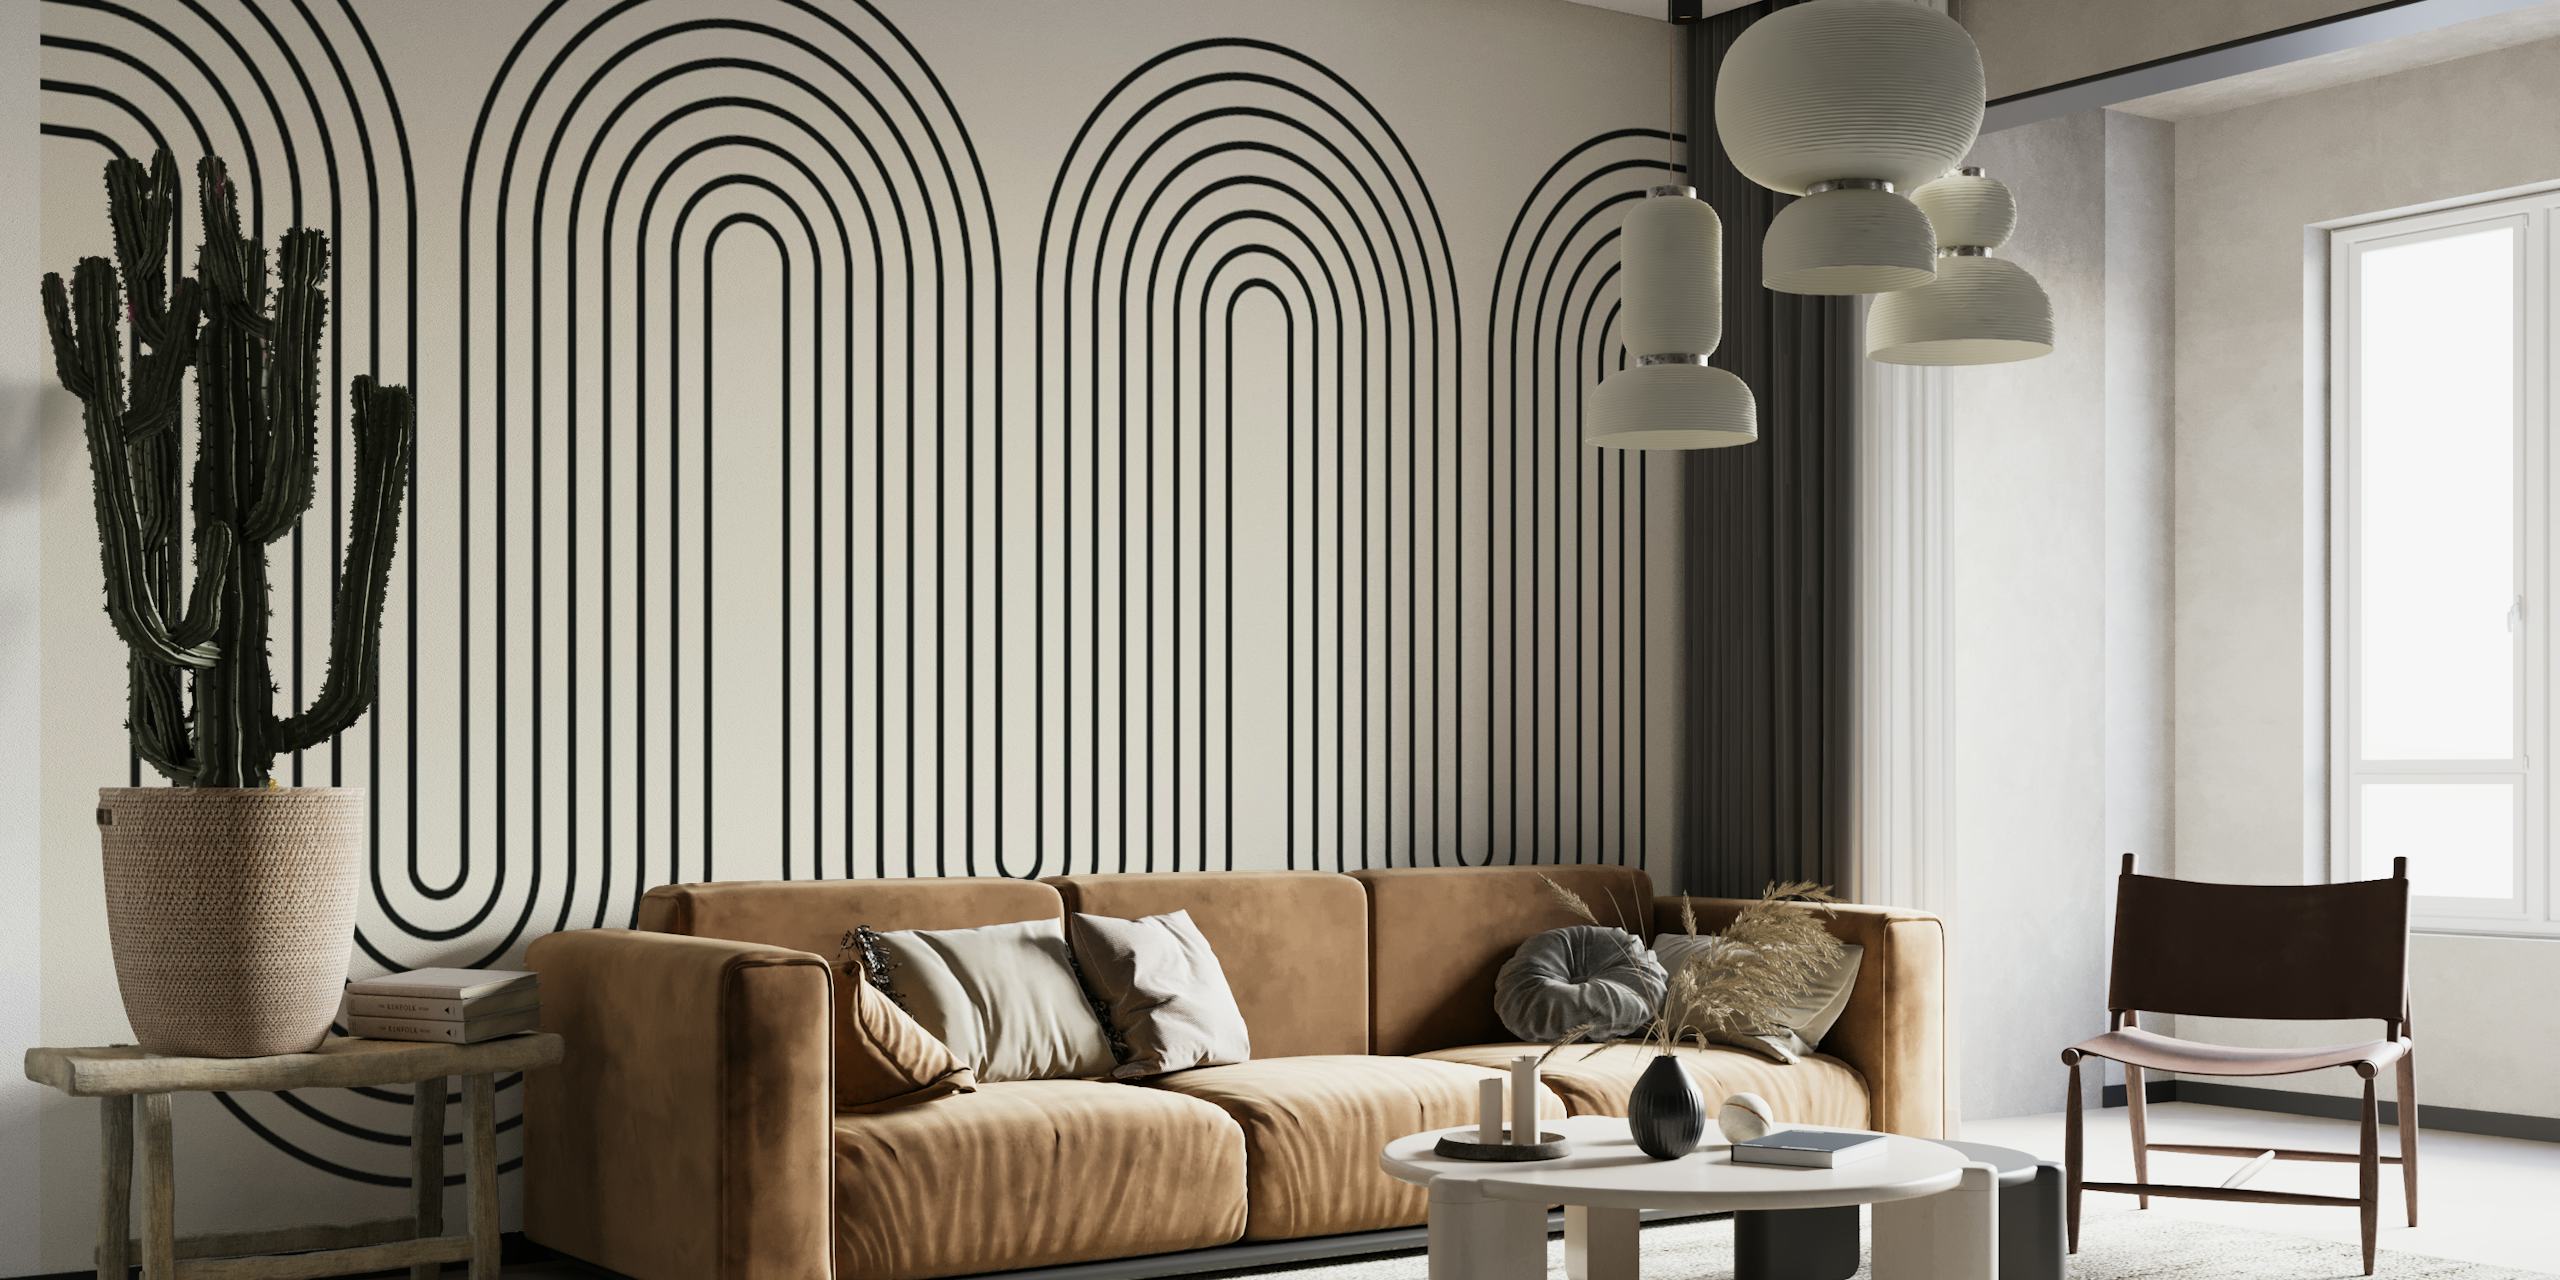 Modernes minimalistisches Wandbild mit Wellenlinien in Graustufen